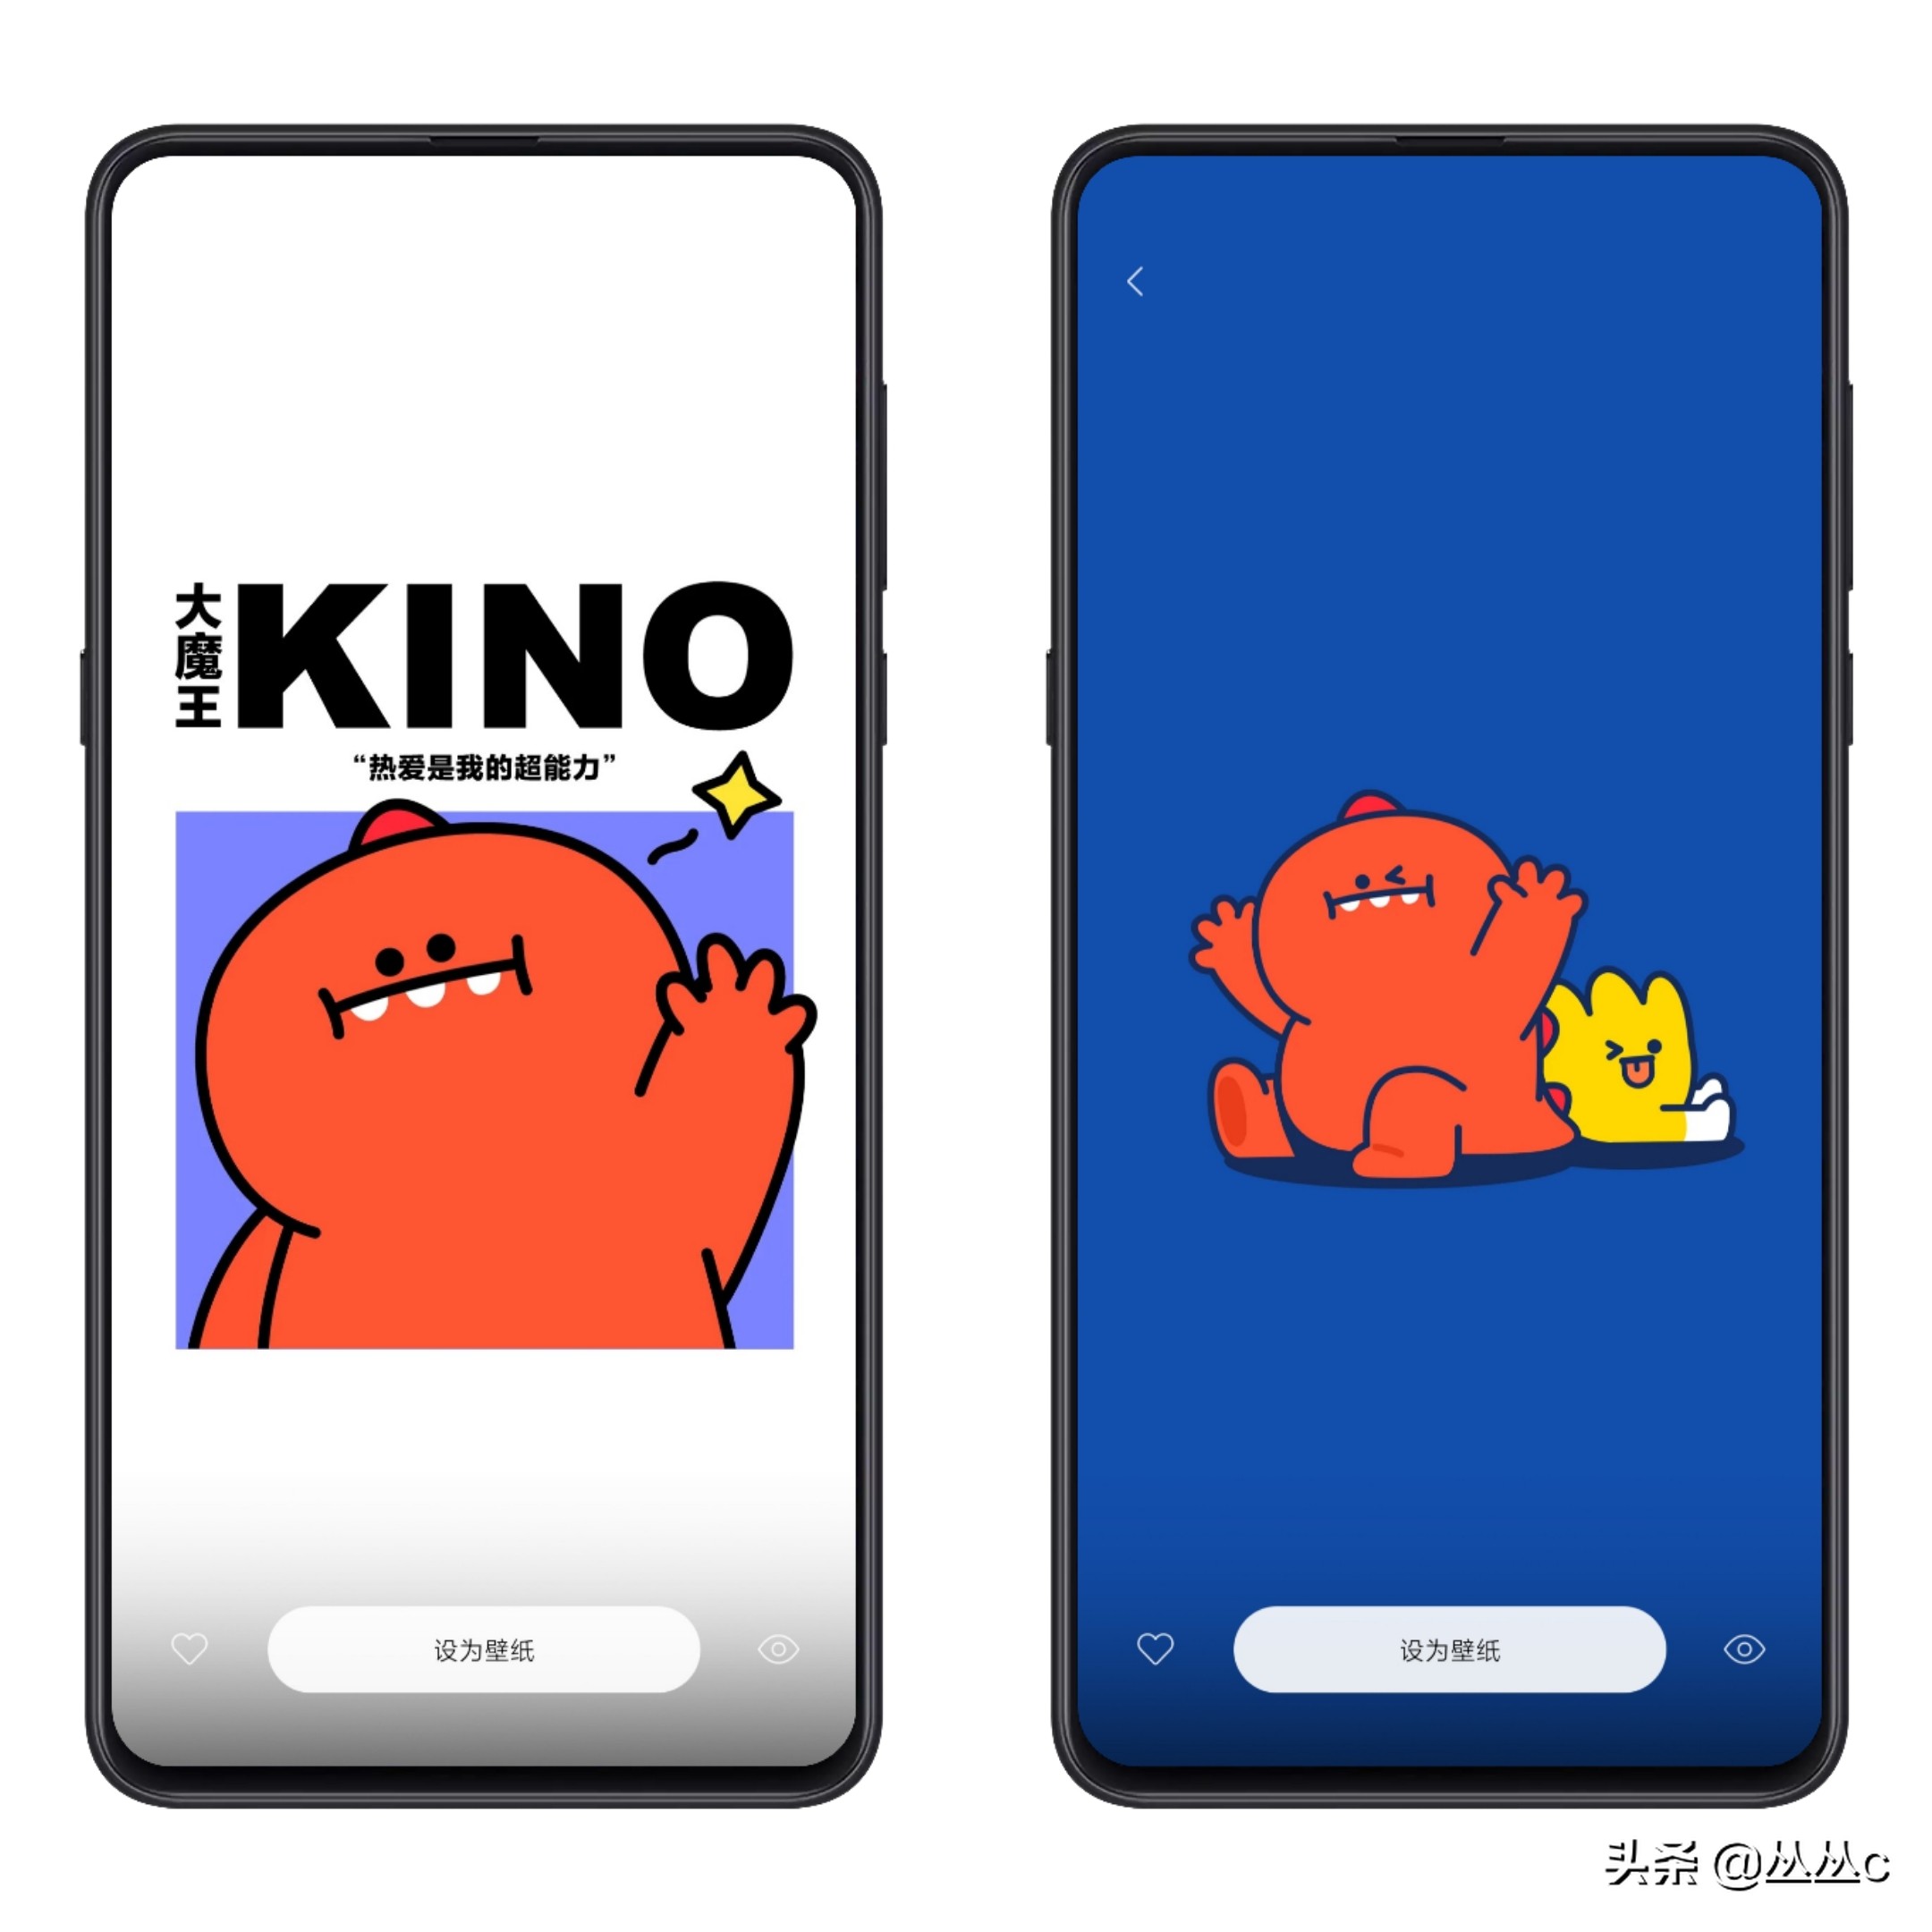 小米主题店铺发布K30官方网订制主题风格 Hello I’m Kino